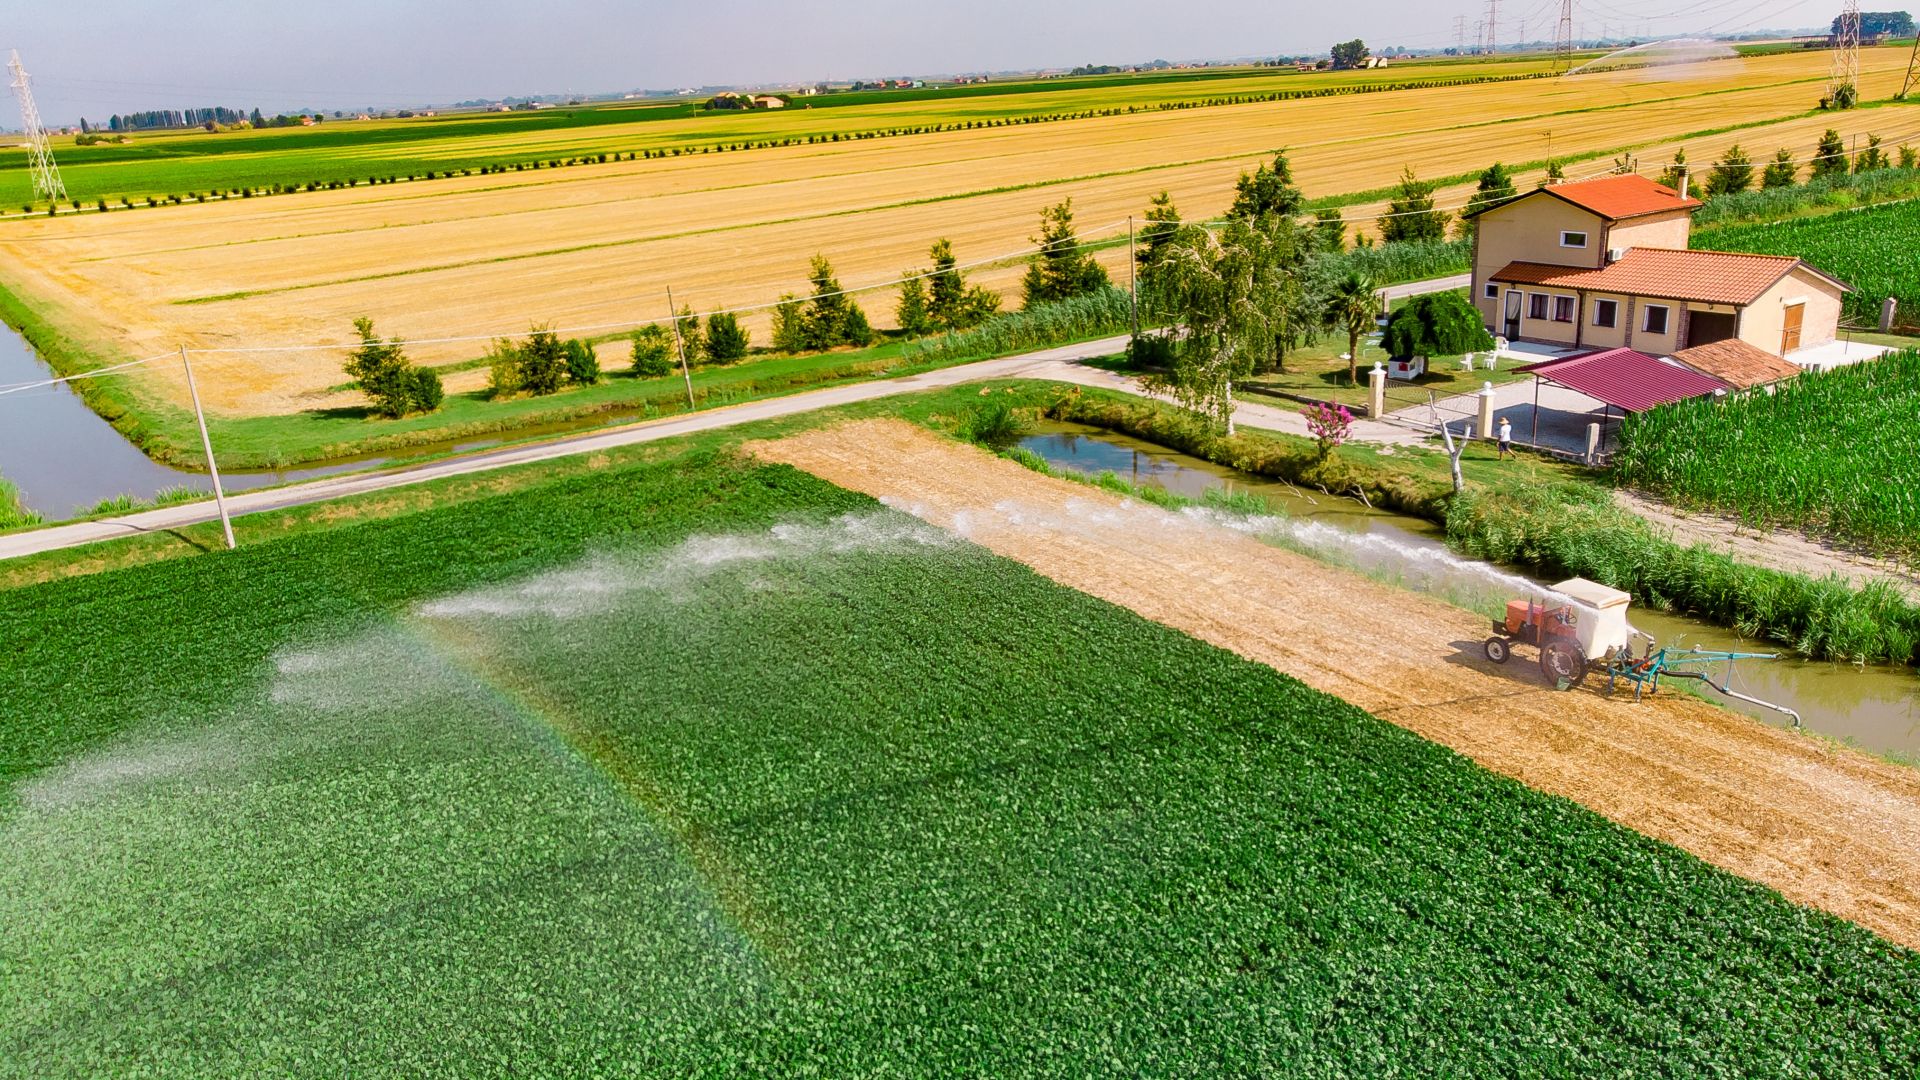 Racjonalne gospodarowanie wodą w rolnictwie